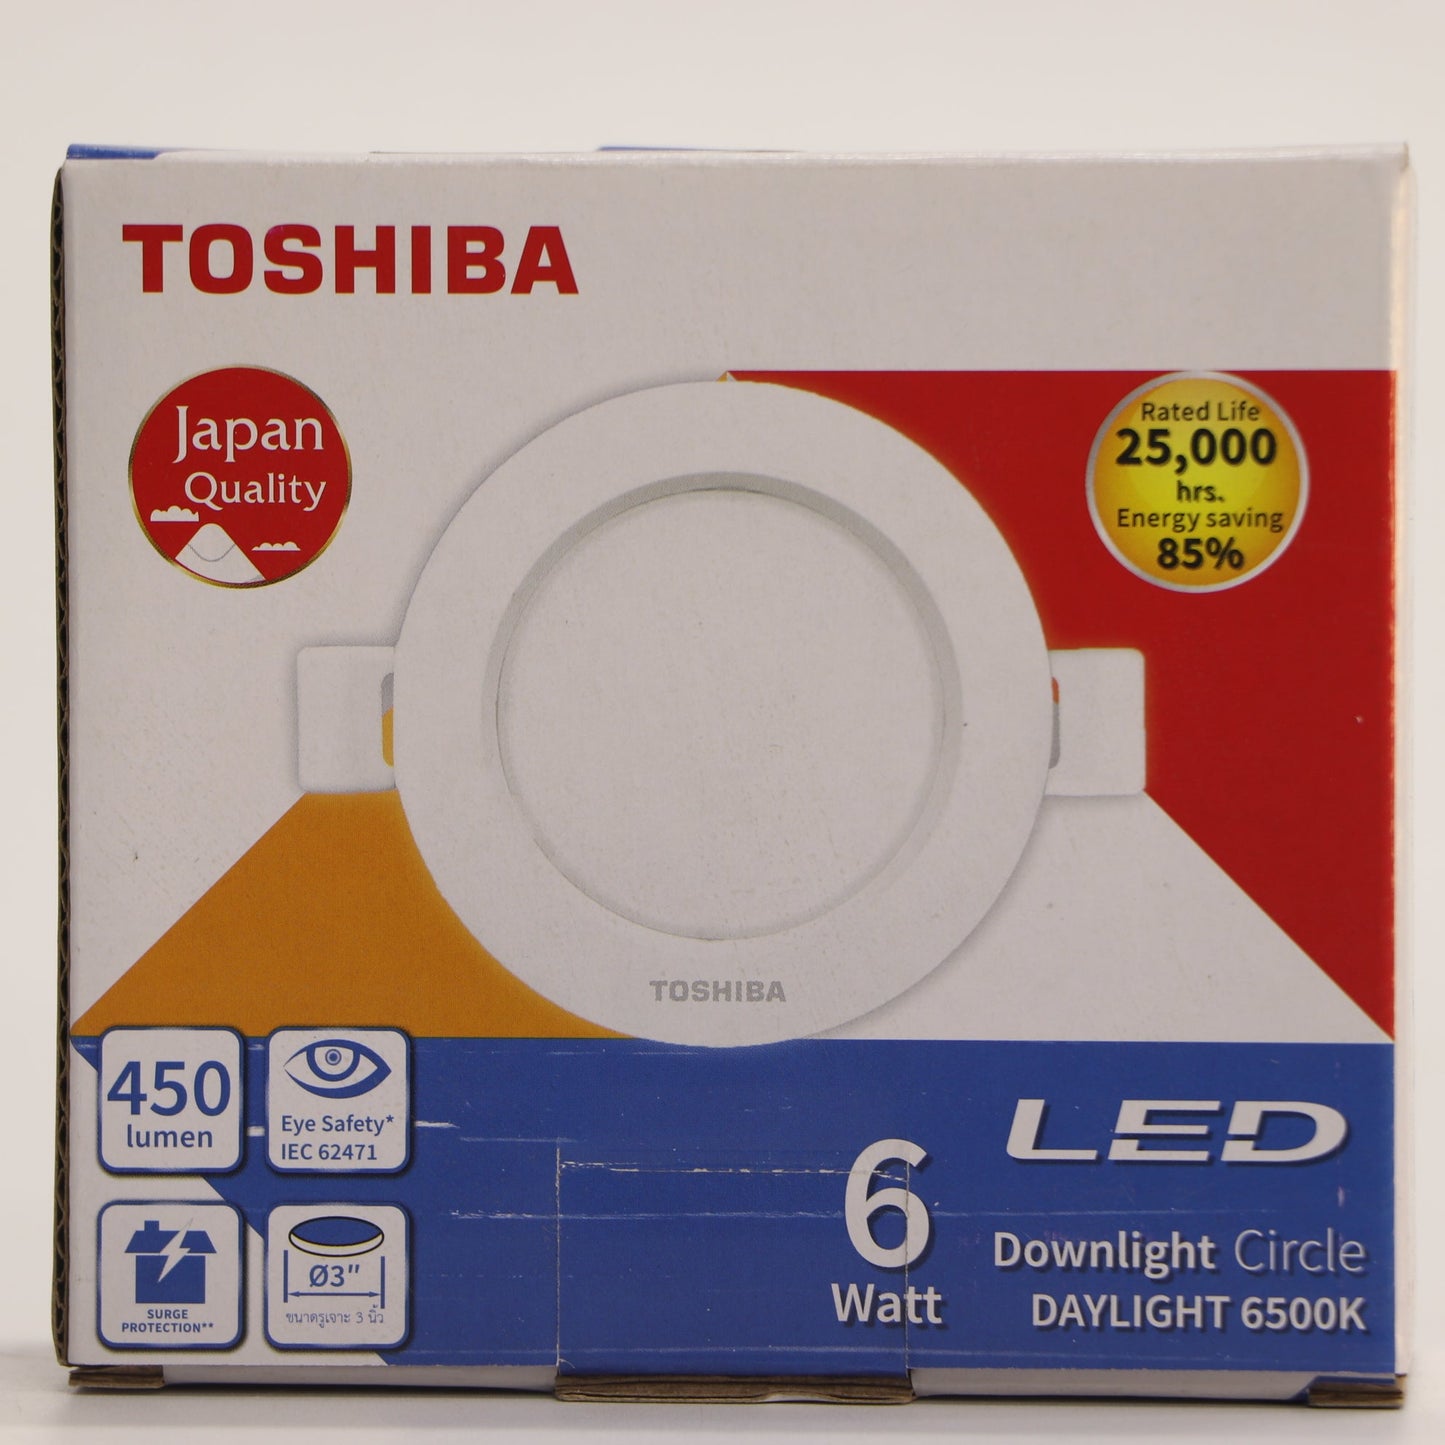 អំពូលបង្កប់ពិតានមូល LED-TOSHIBA-6W ពណ៌ស